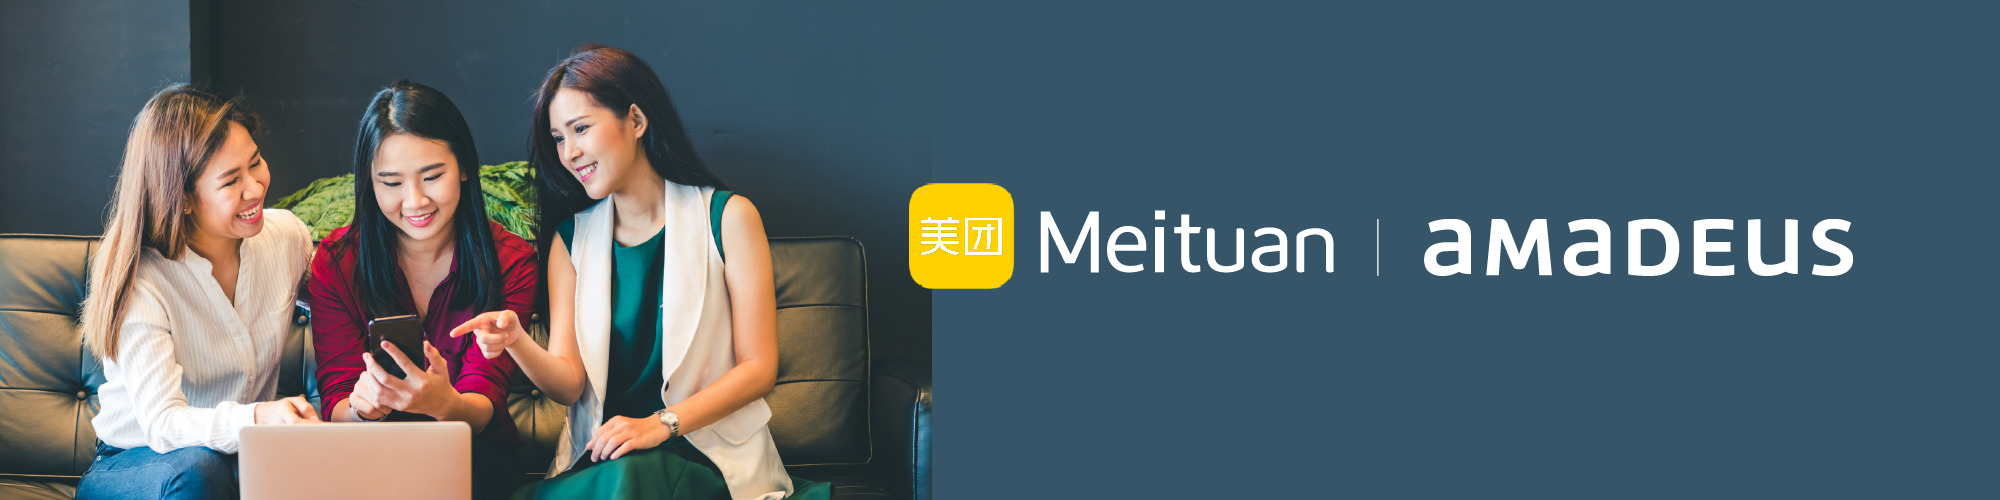 Amadeus Forms Strategic Partnership with Meituan, Leading Chinese eCommerce Platform